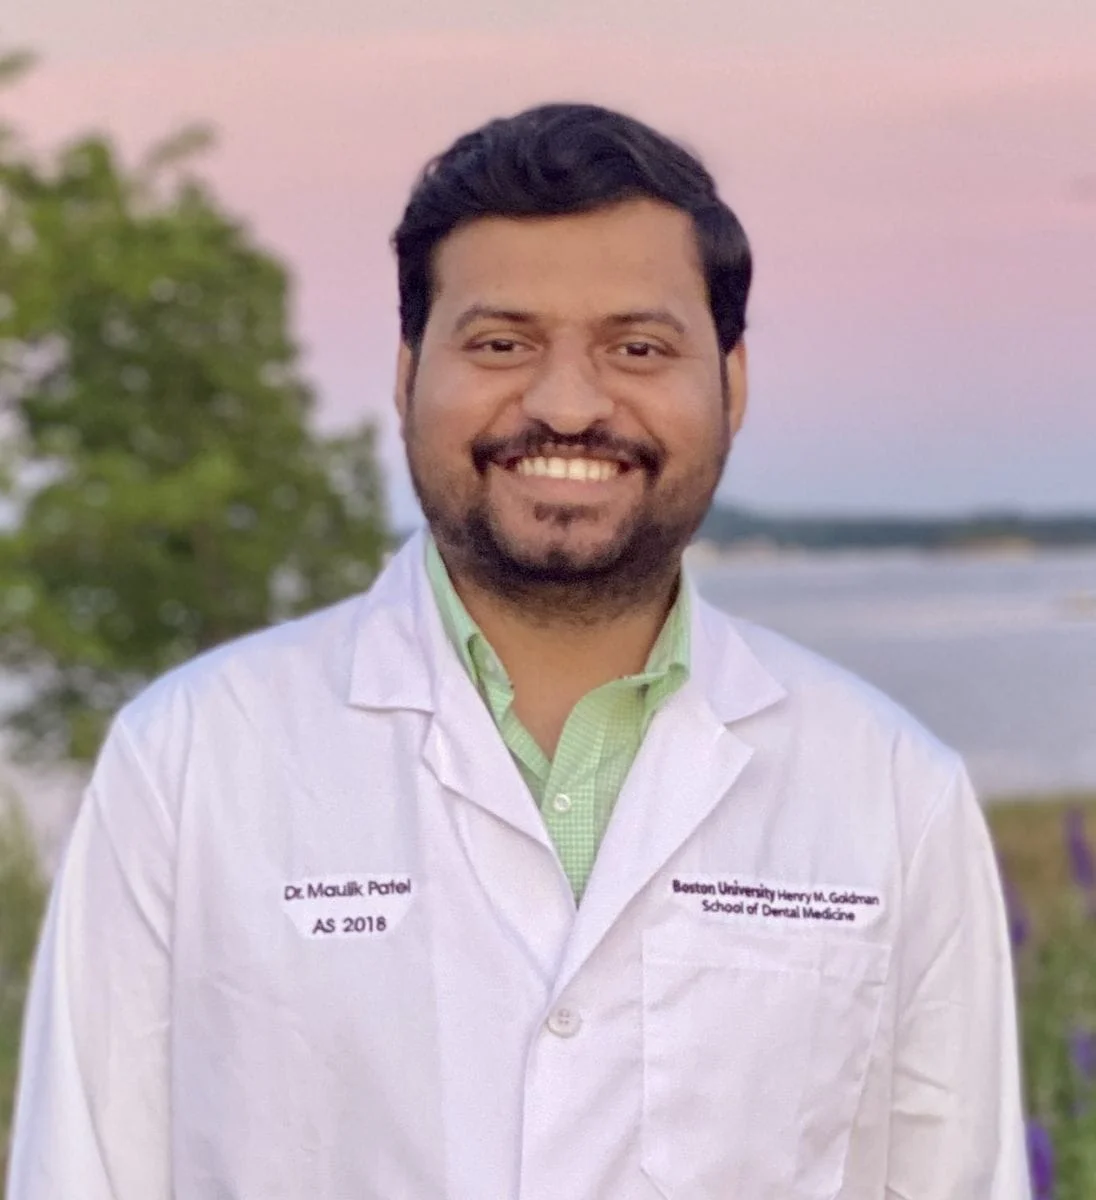 Dr. Maulik Patel